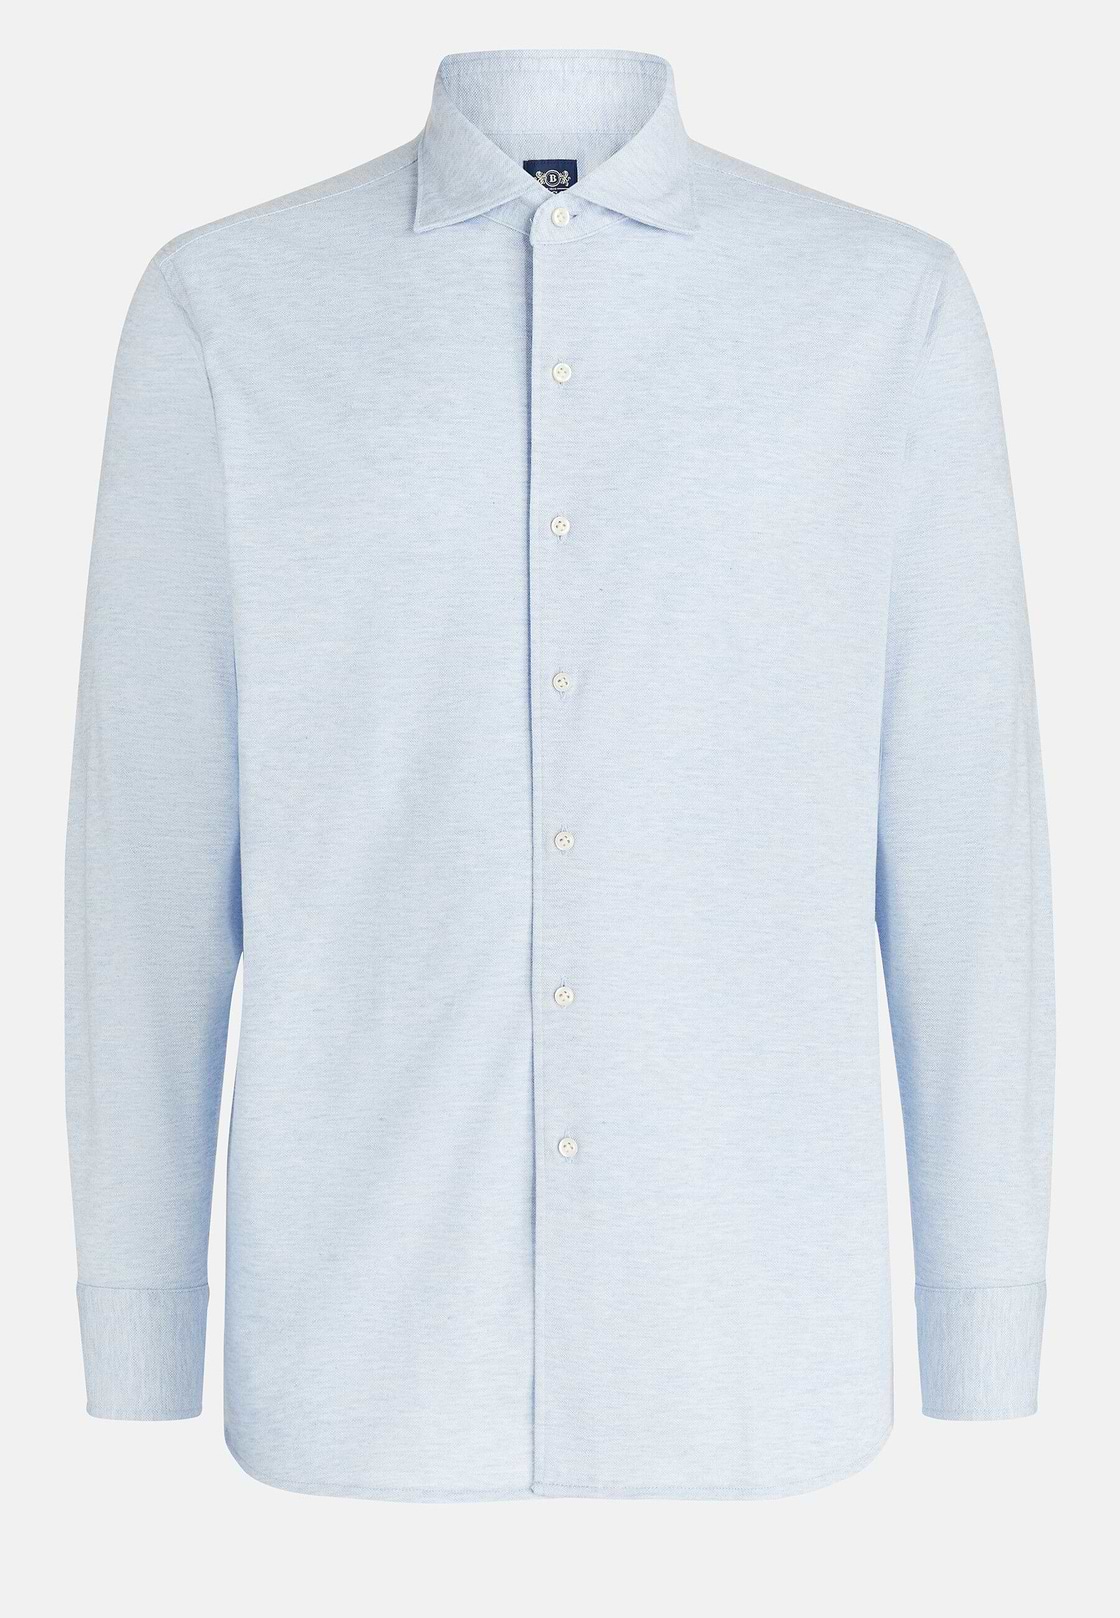 Cotton Piqué Regular Fit Polo Shirt, Light blue, hi-res